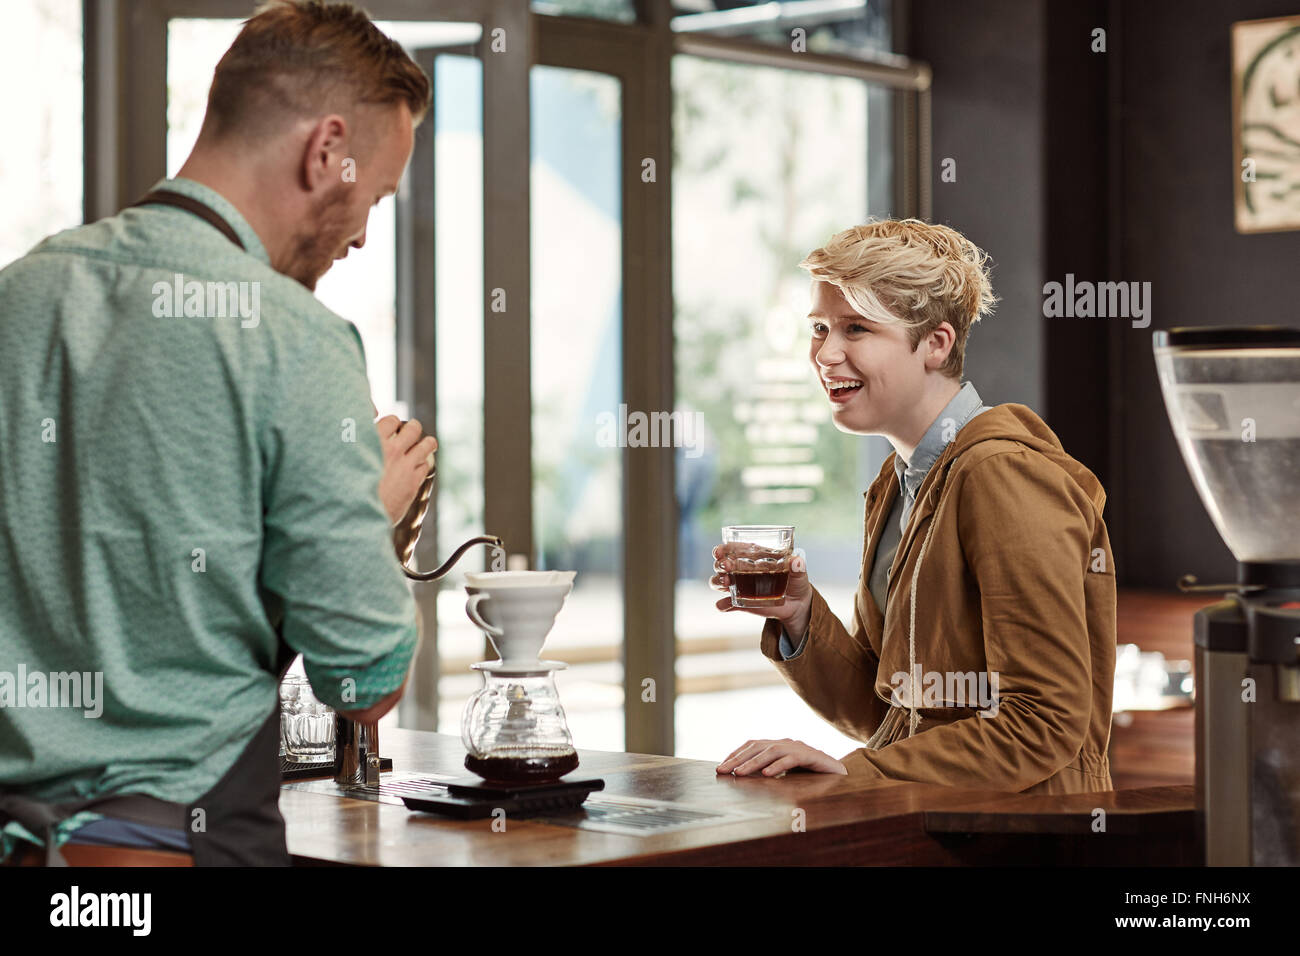 Friendly femme en riant avec un café moderne de barista Banque D'Images